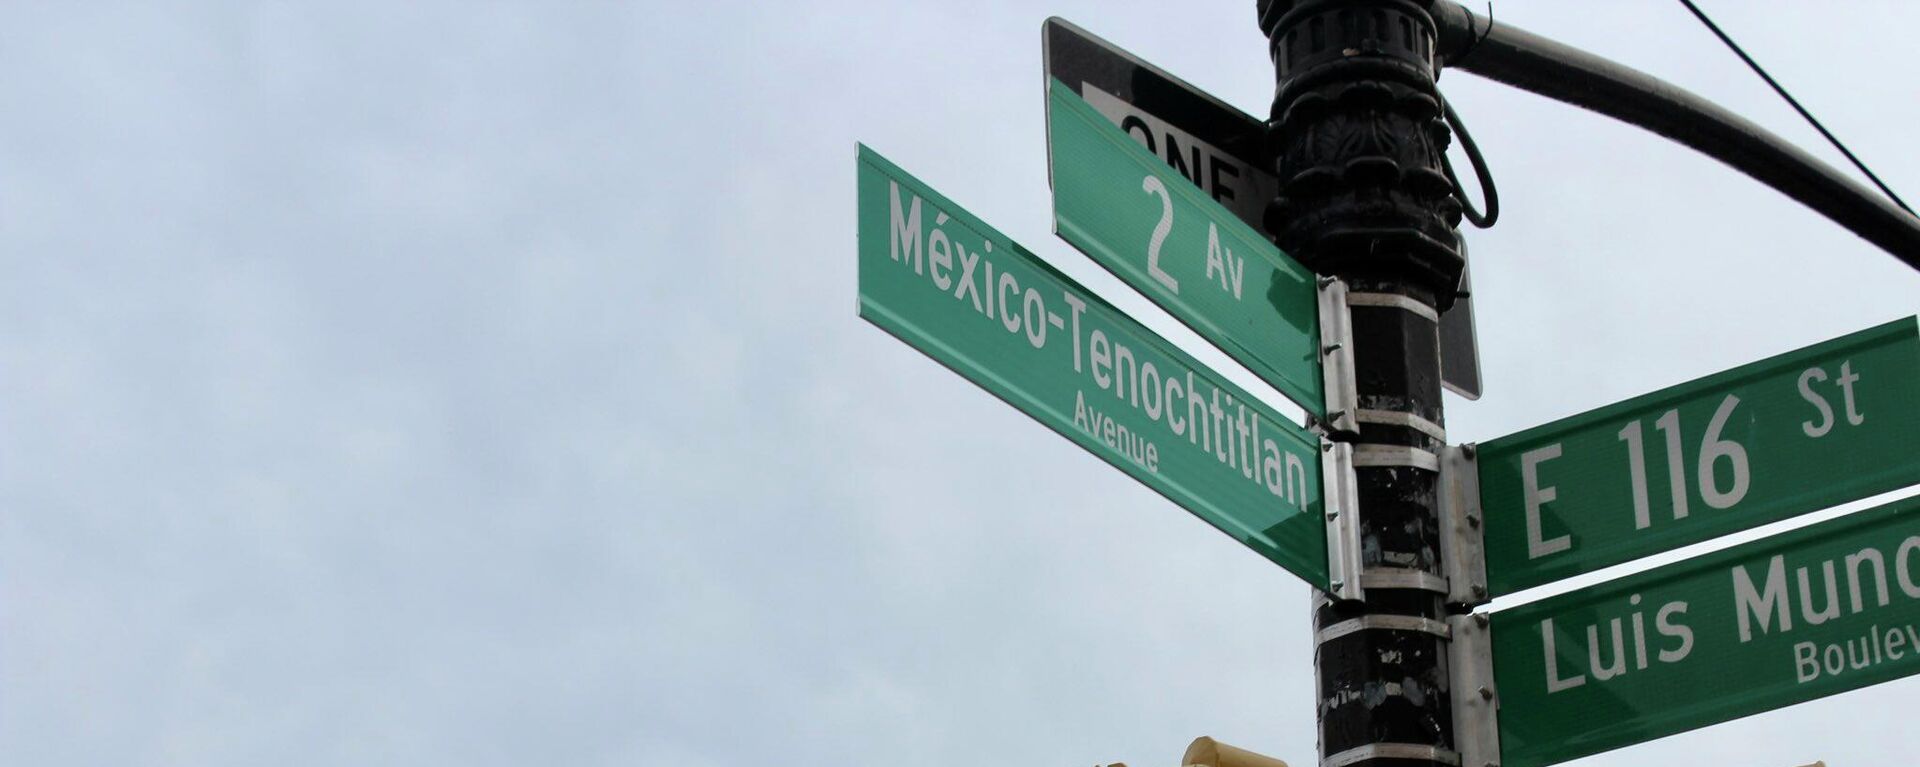 Avenida México Tenochtitlan en Manhattan, Nueva York. - Sputnik Mundo, 1920, 22.11.2021